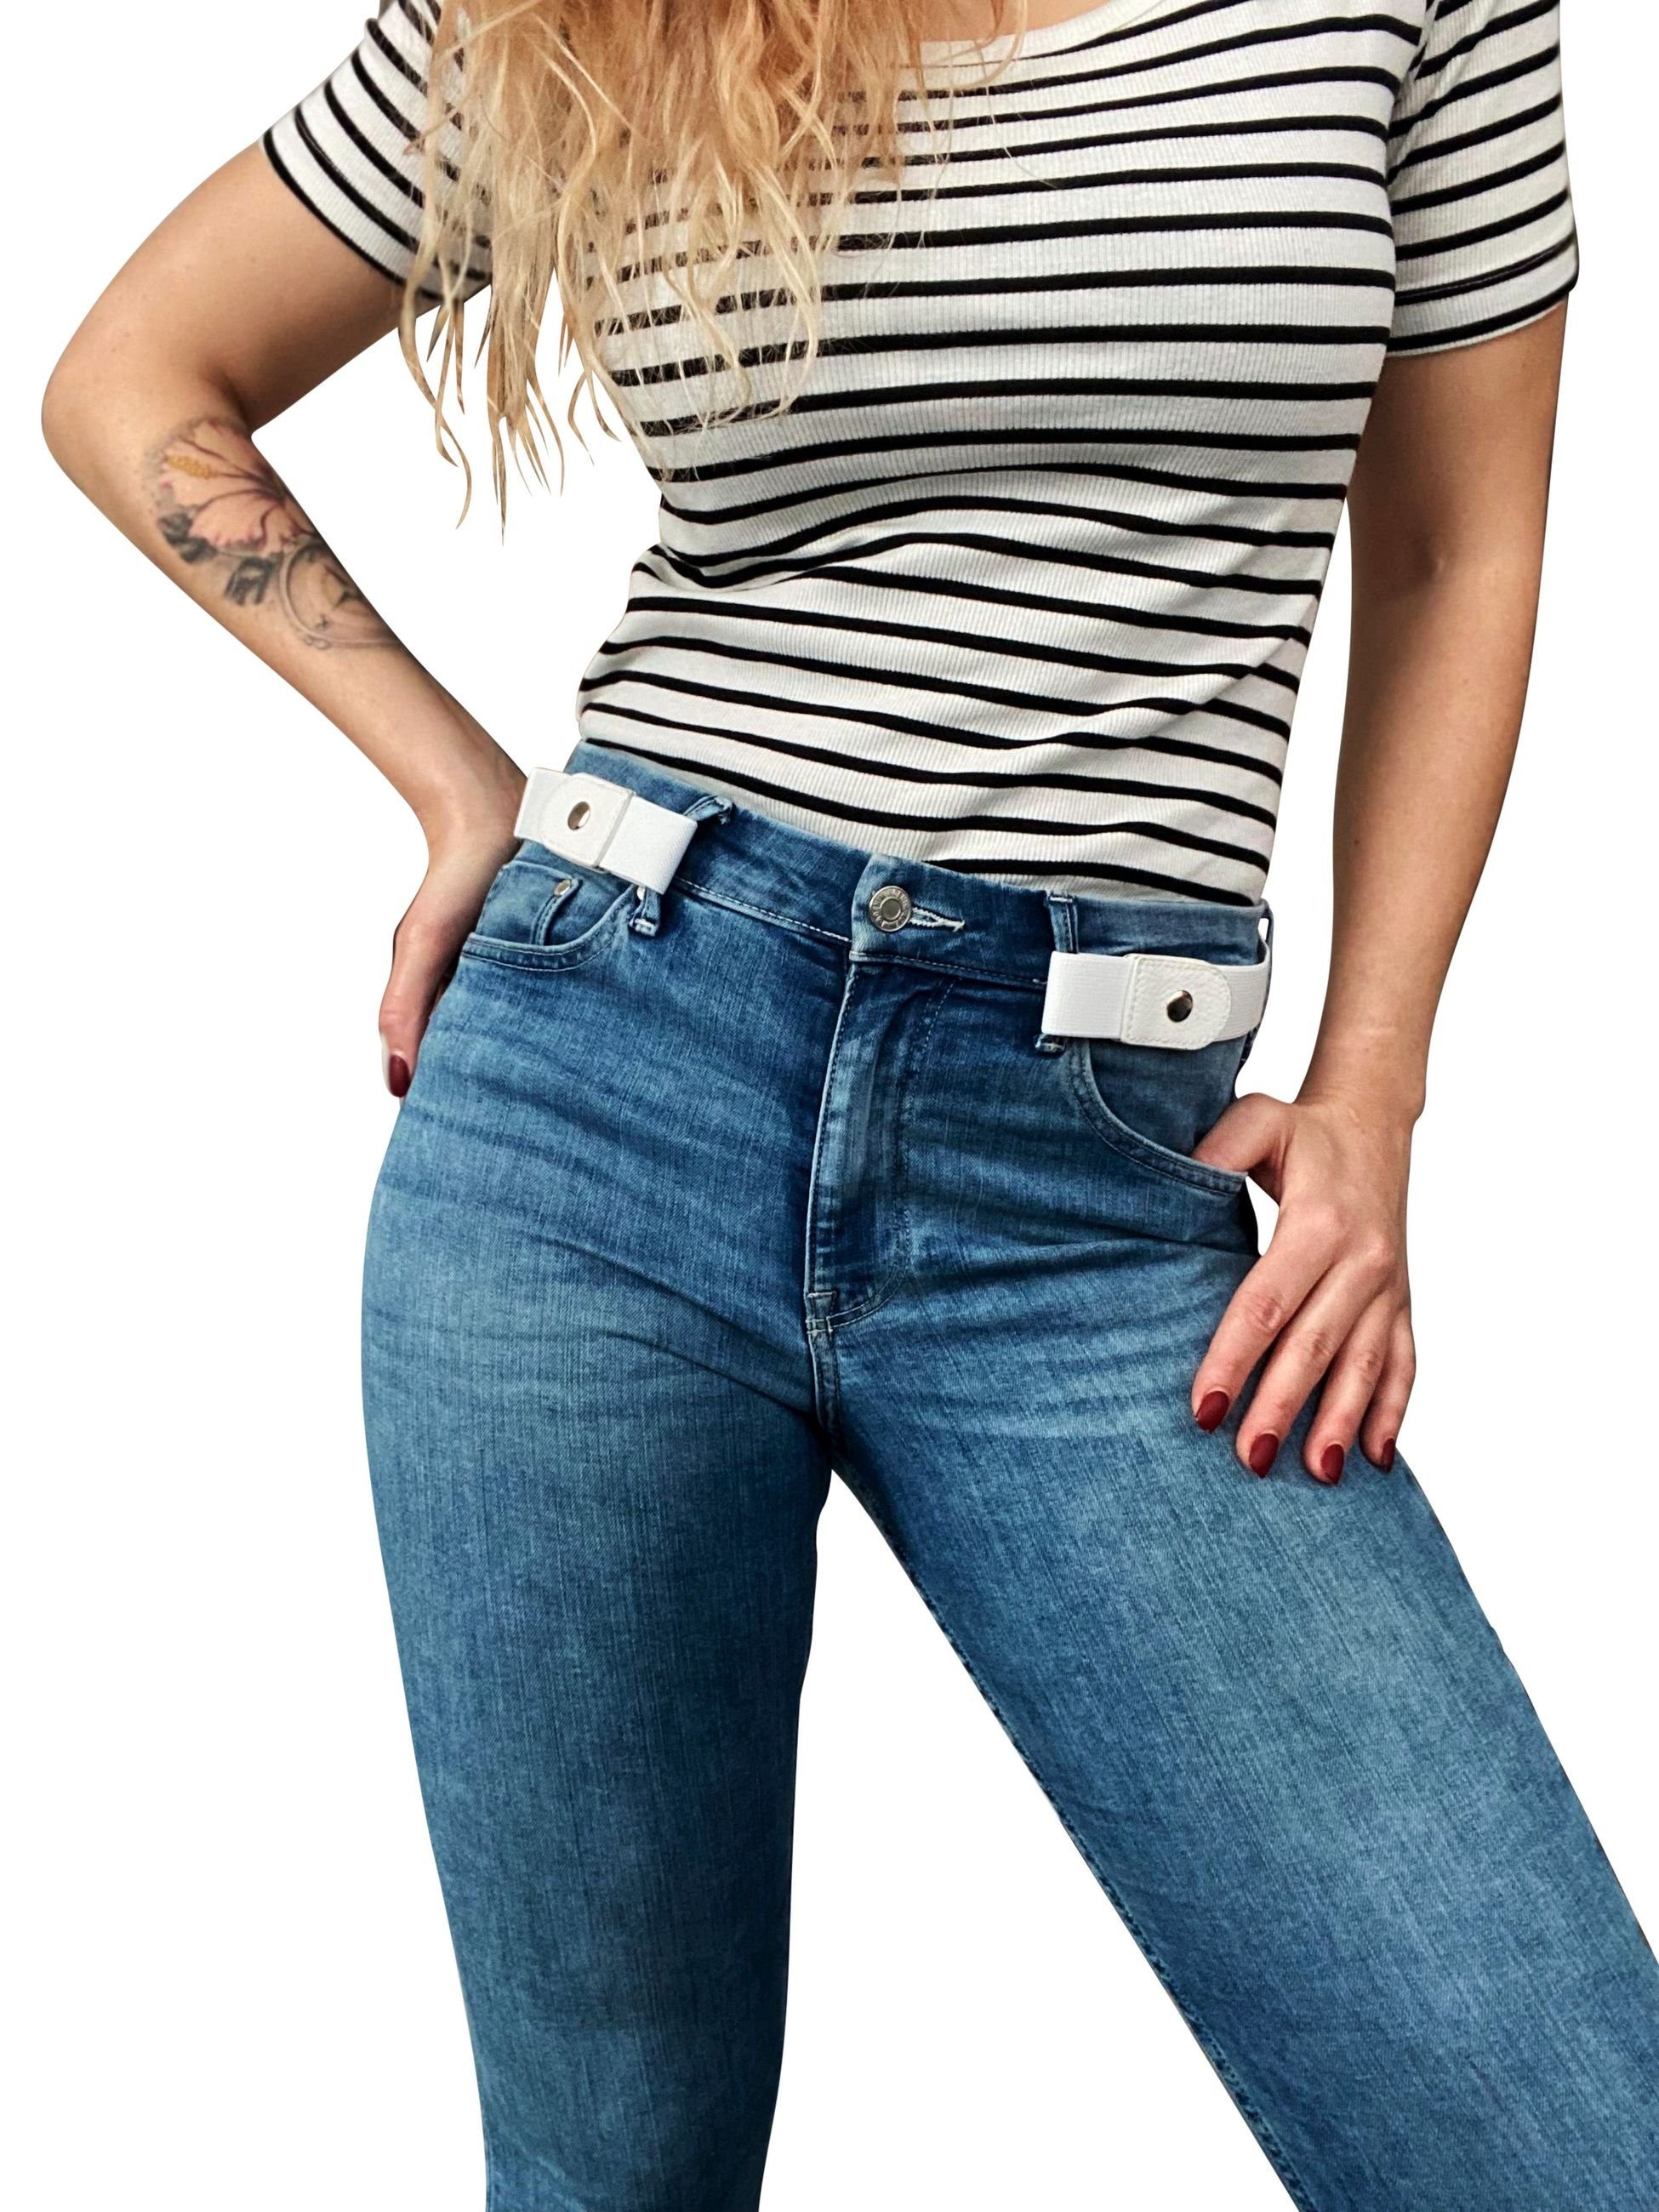 Stretchgürtel Stretchgürtel Weiß 18829 Einziehen FRONHOFER Jeans die in FRONHOFER Schnalle zum ohne